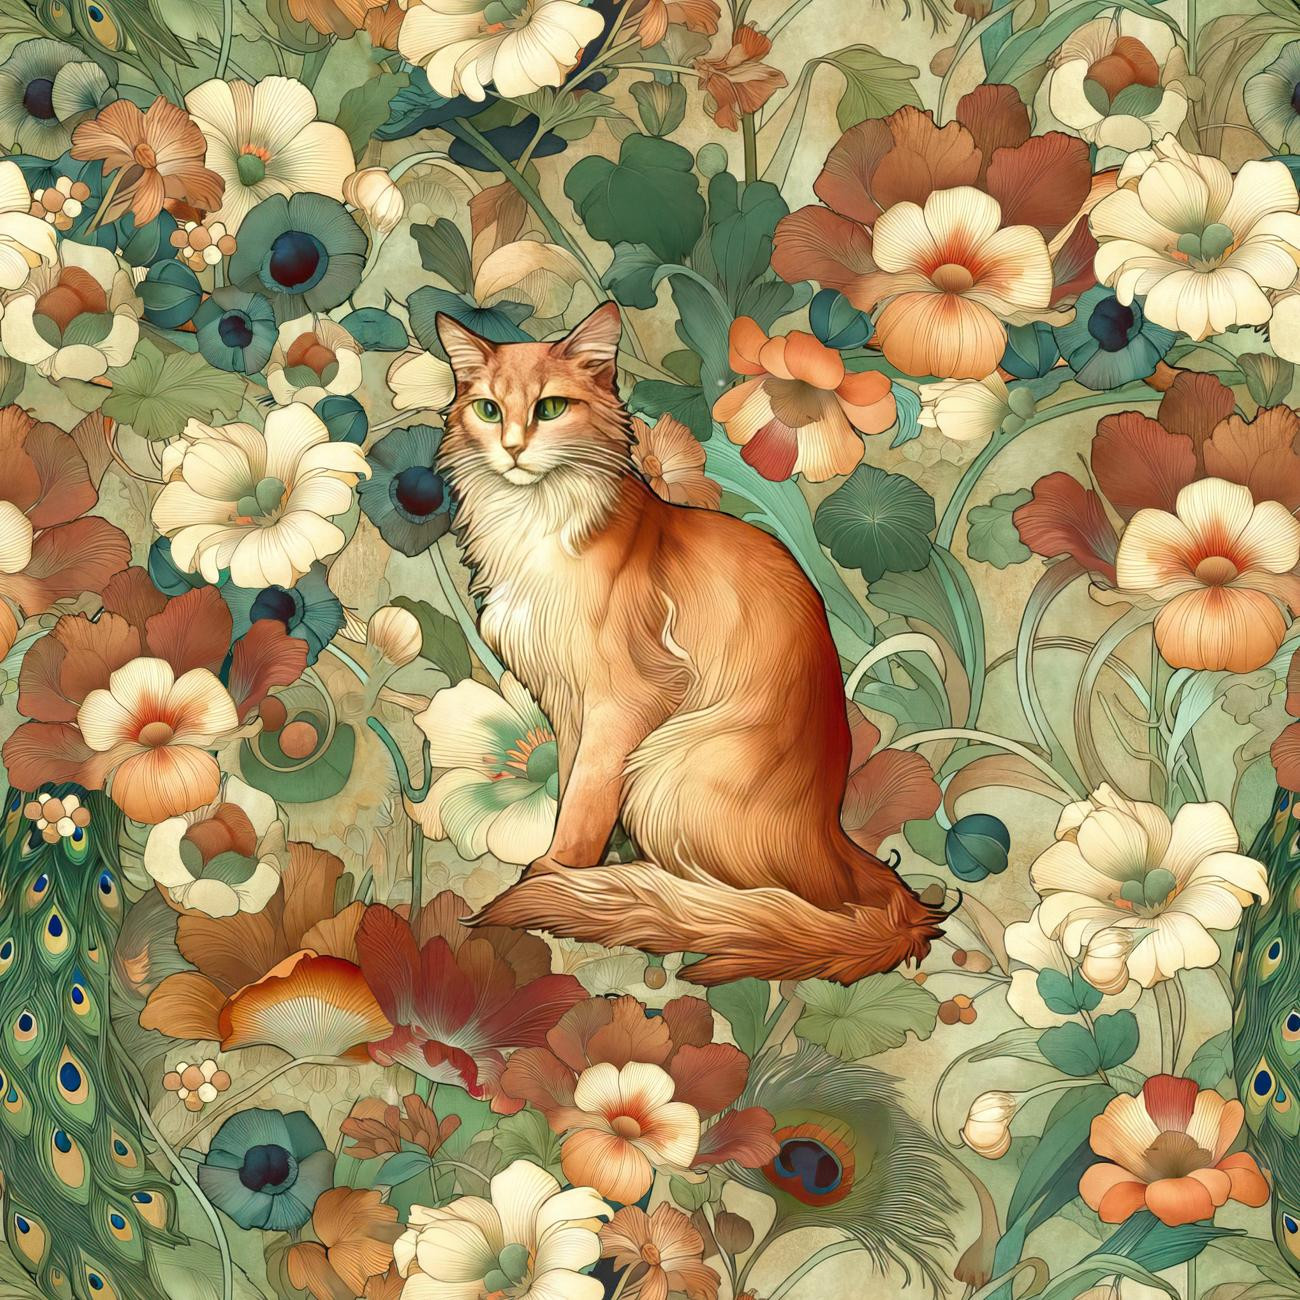 ART NOUVEAU CATS & FLOWERS PAT. 2 - panel (75cm x 80cm)